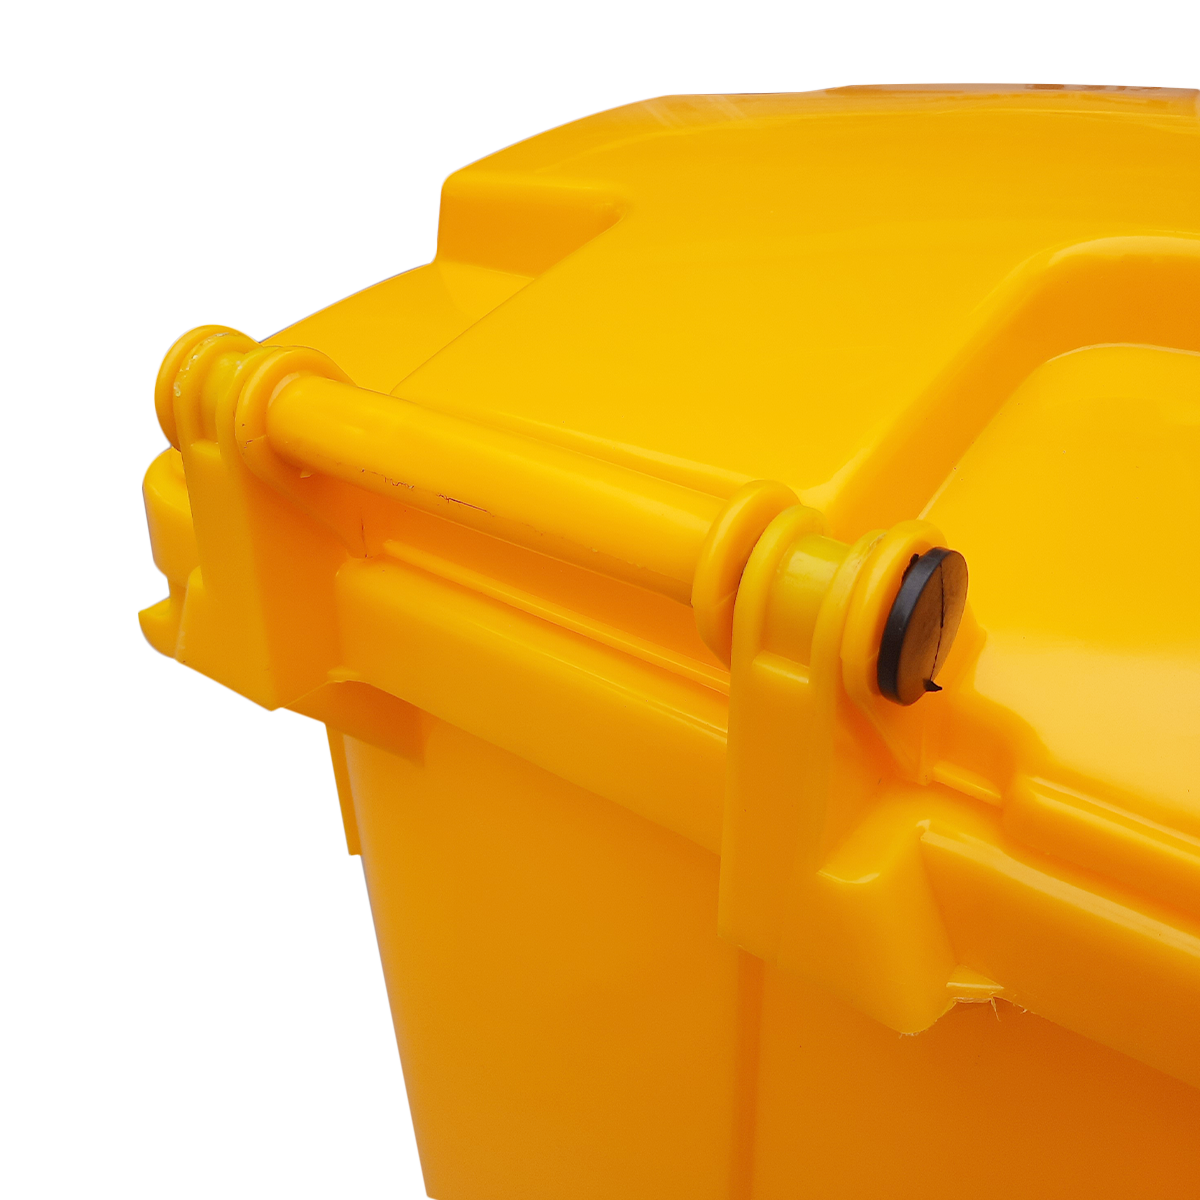 ถังขยะเทศบาลขนาดใหญ่ 660 ลิตร แบบมีหูเกี่ยว (Lazy Arm) สีเหลือง